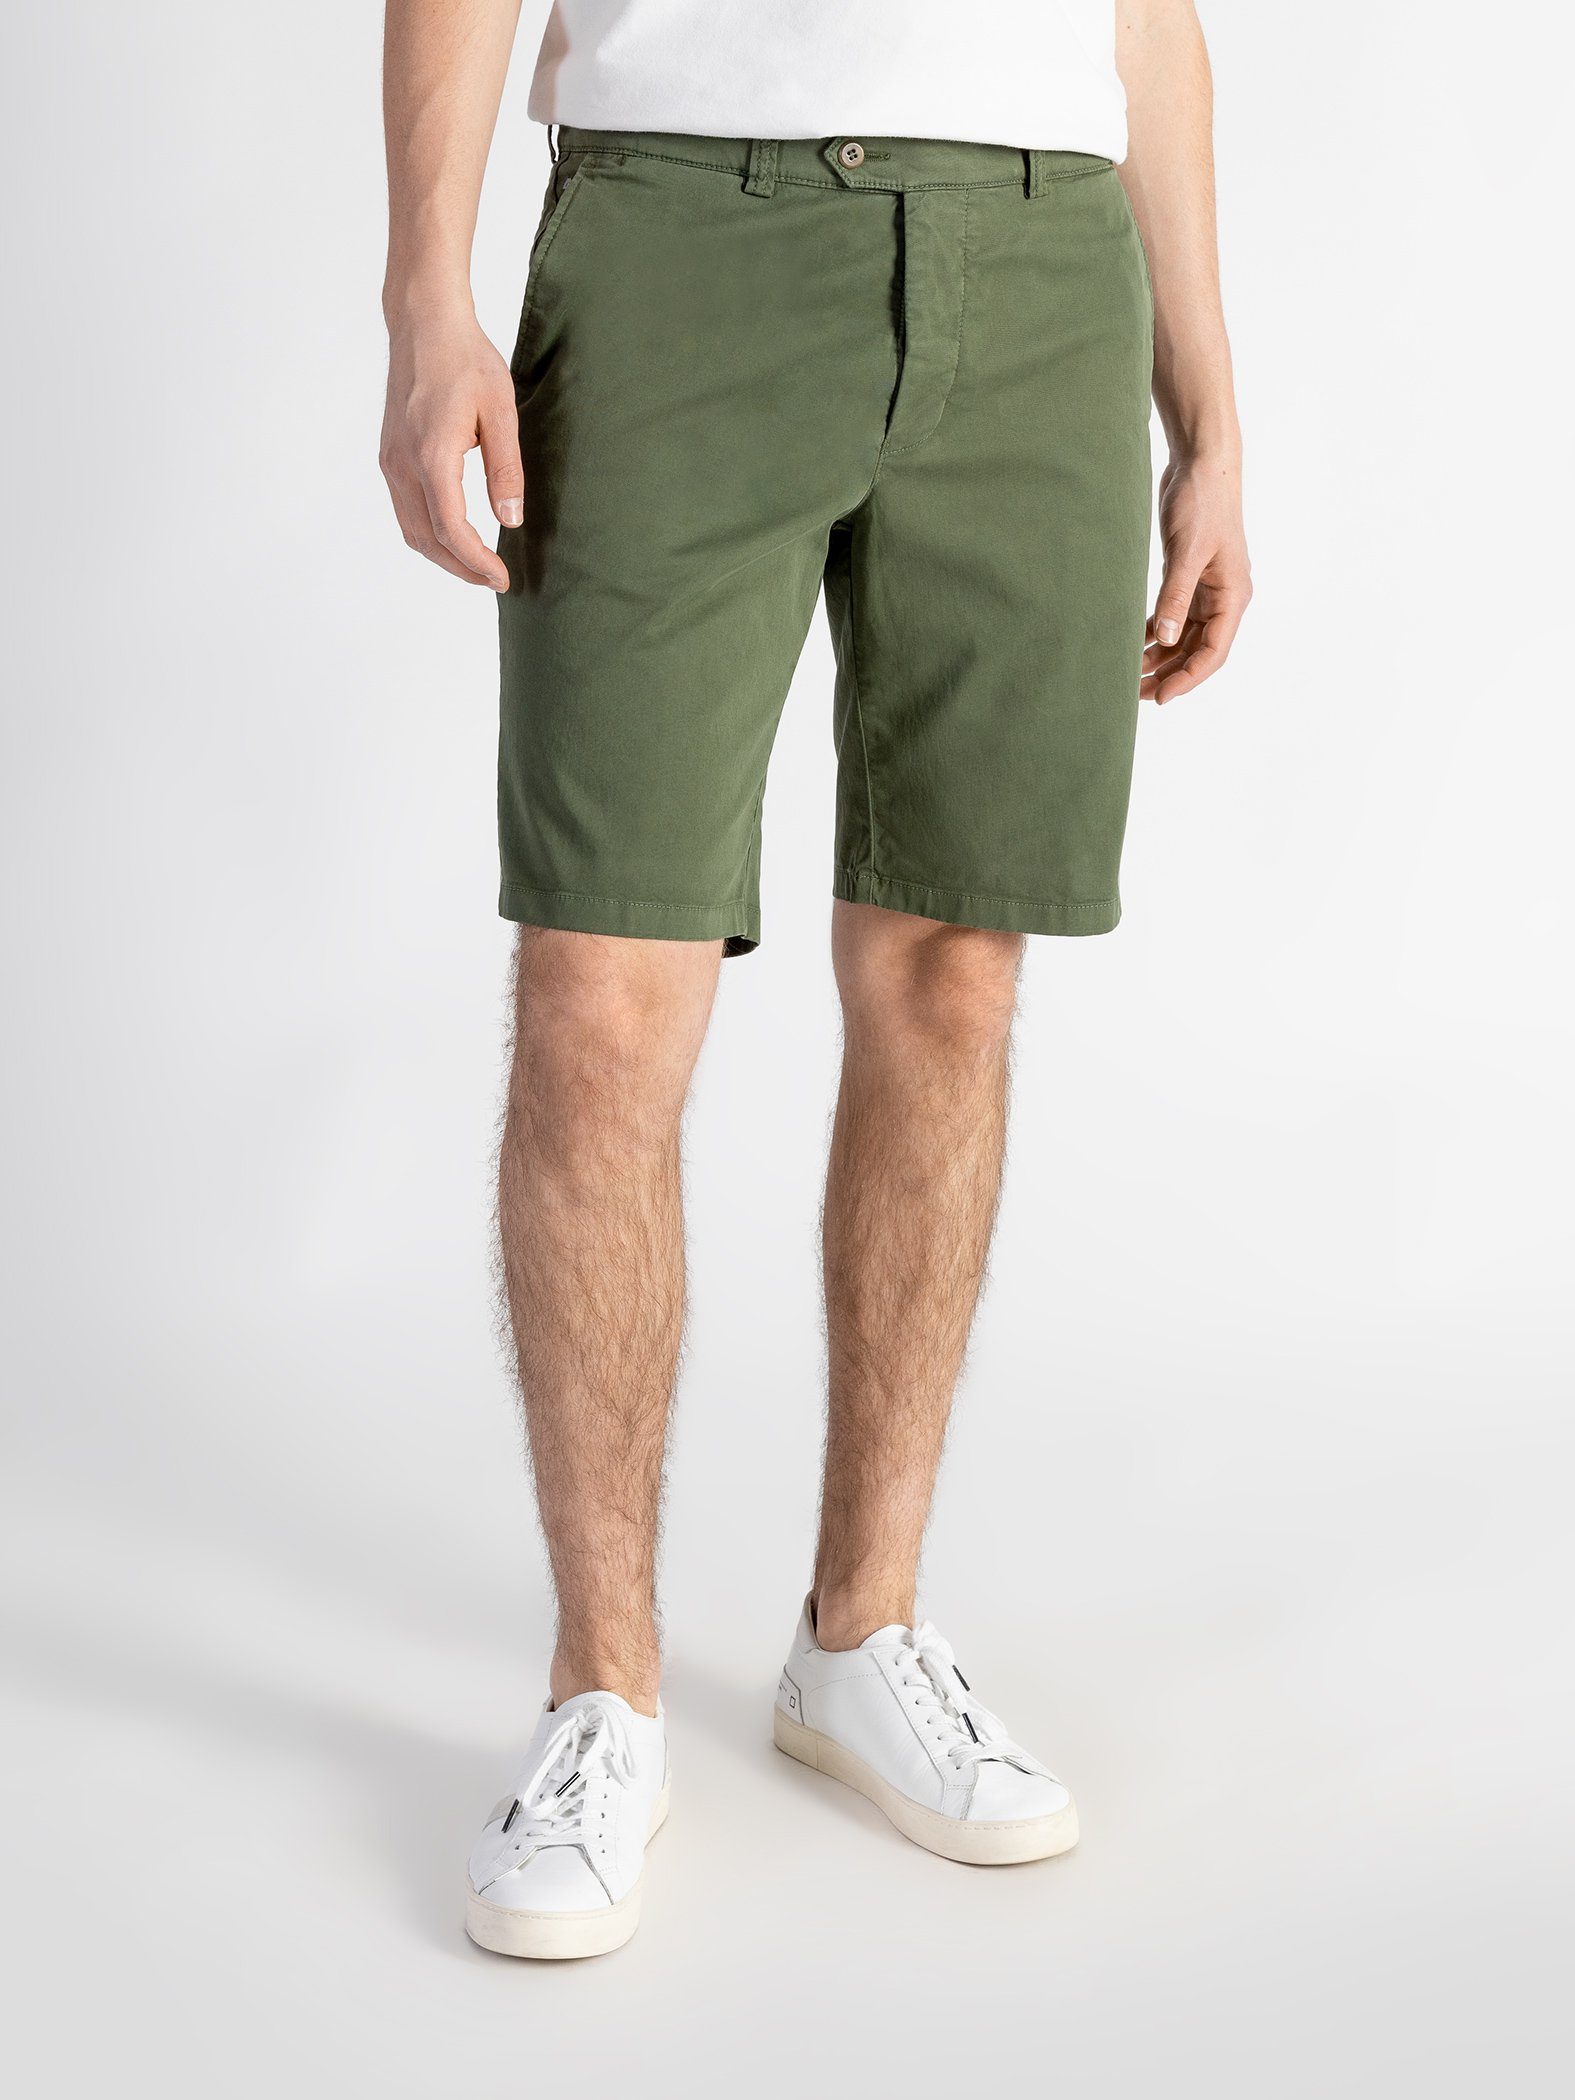 TwoMates Shorts Shorts mit elastischem Bund, Farbauswahl, GOTS-zertifiziert Grün